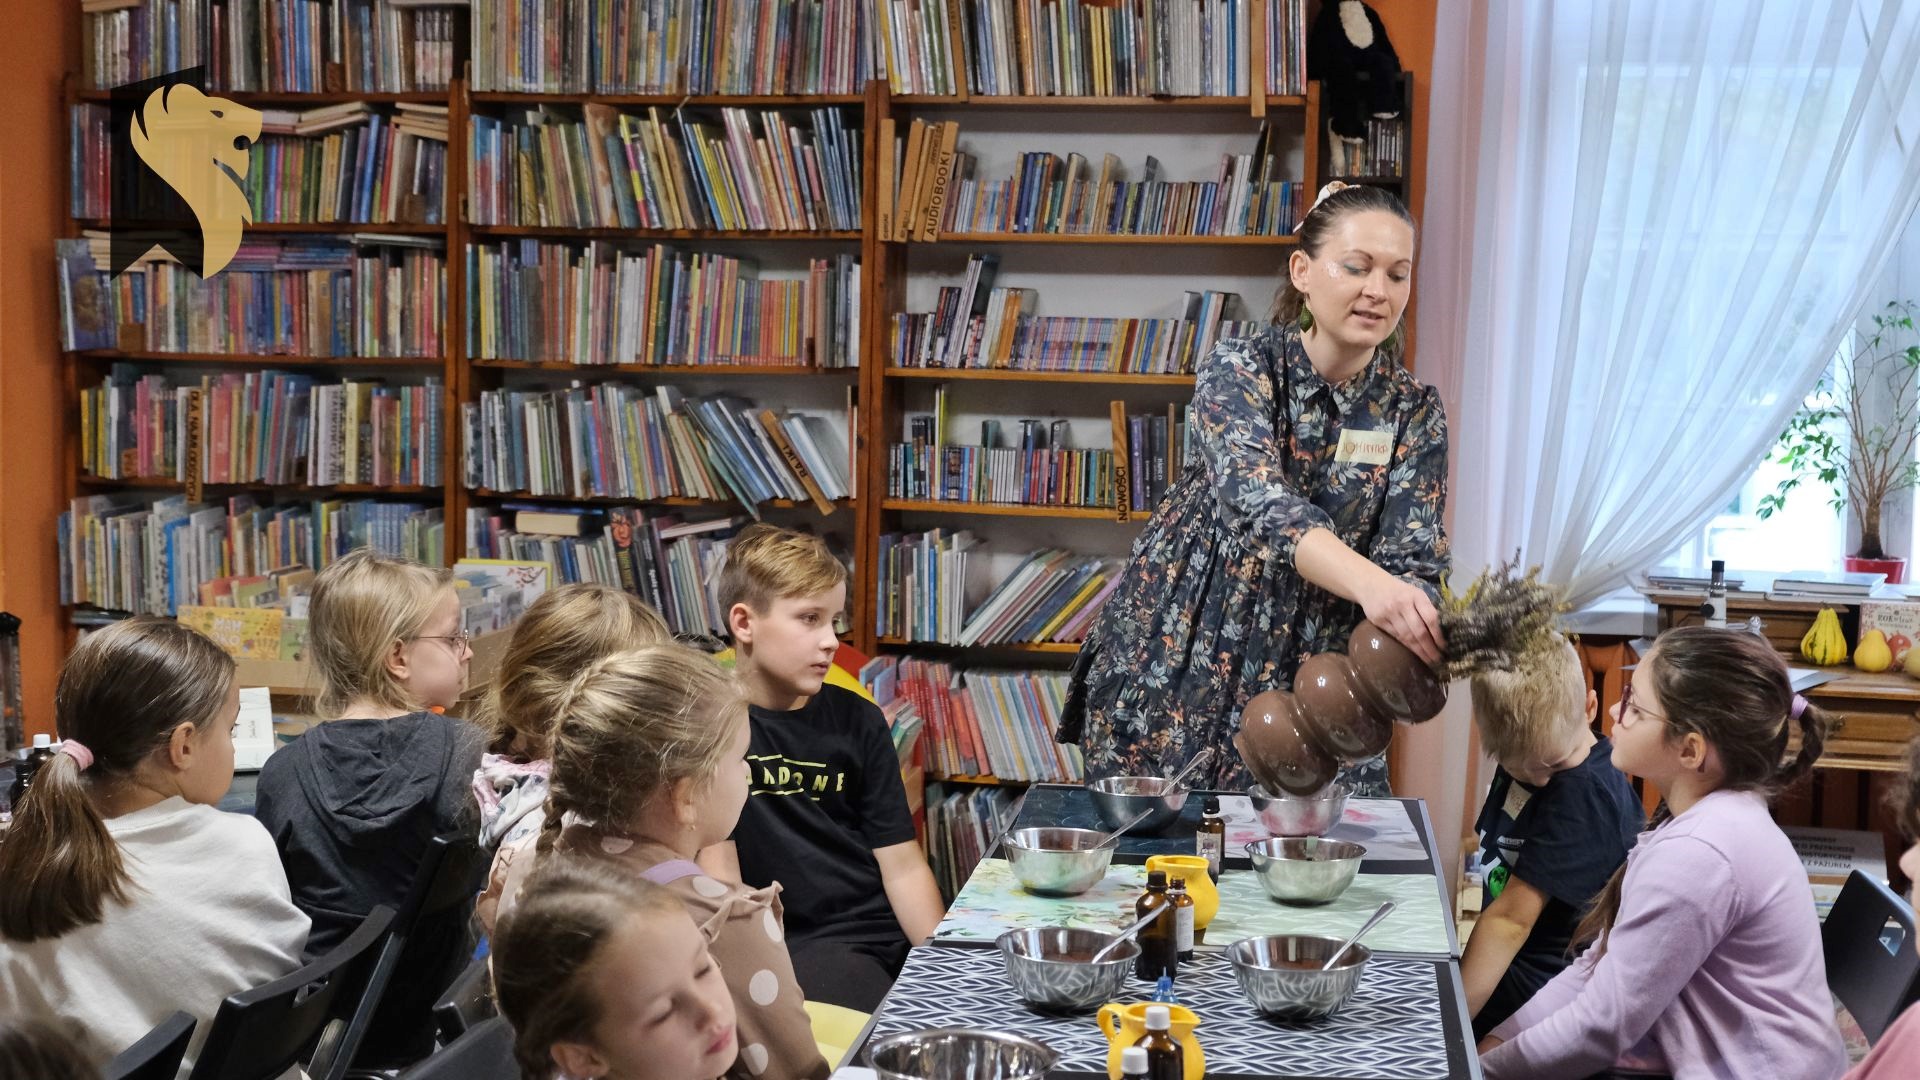 Dzieci siedzą przy stołach w bibliotece, na których leżą kolorowe maty oraz stoją miski. Prowadząca zajęcia- Dominika Dudzic podaje do wąchania zioła.